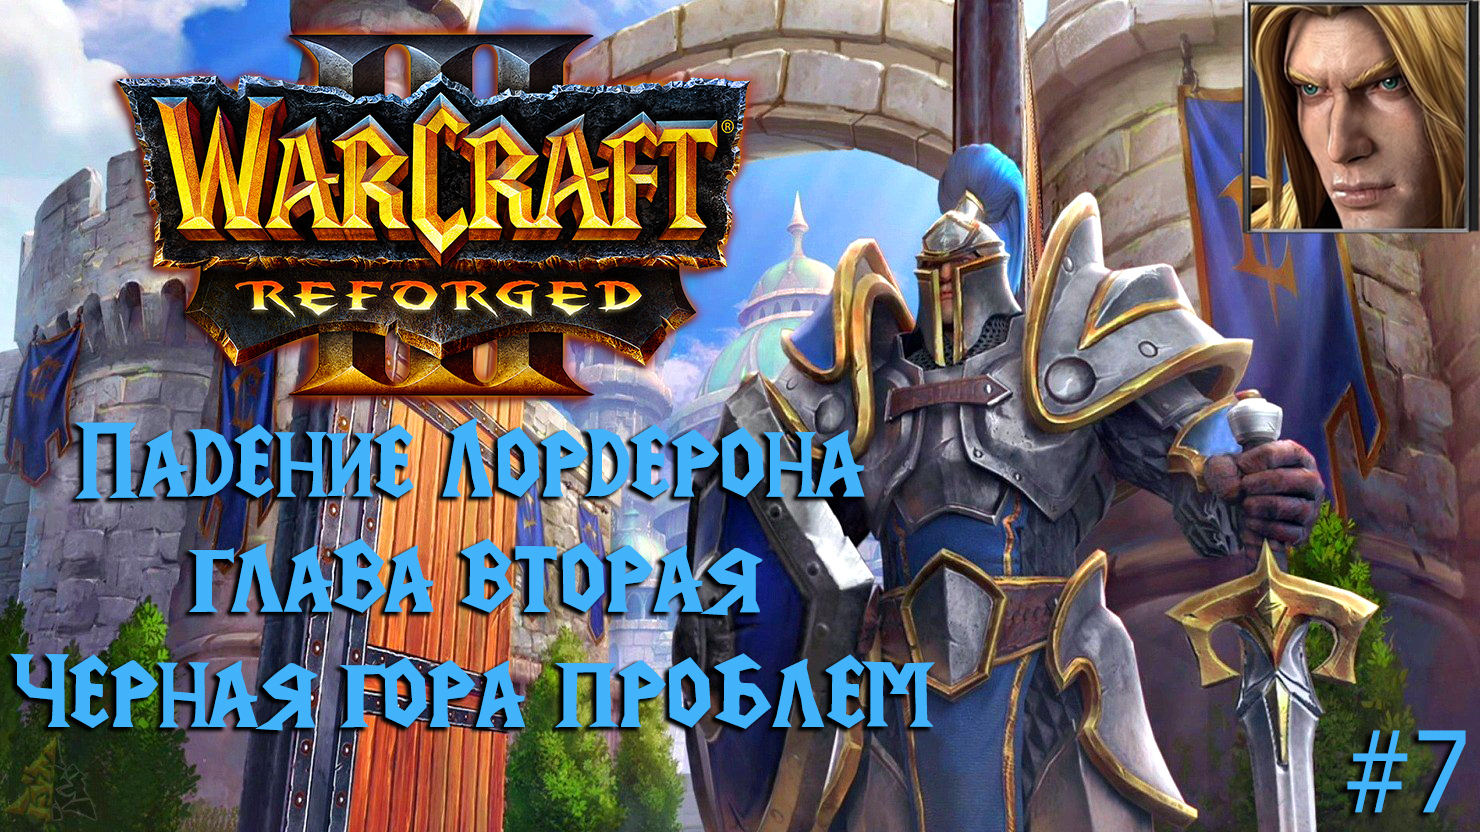 Warcraft III: Reforged | Падение Лордерона | Глава вторая | Черная гора проблем | #7